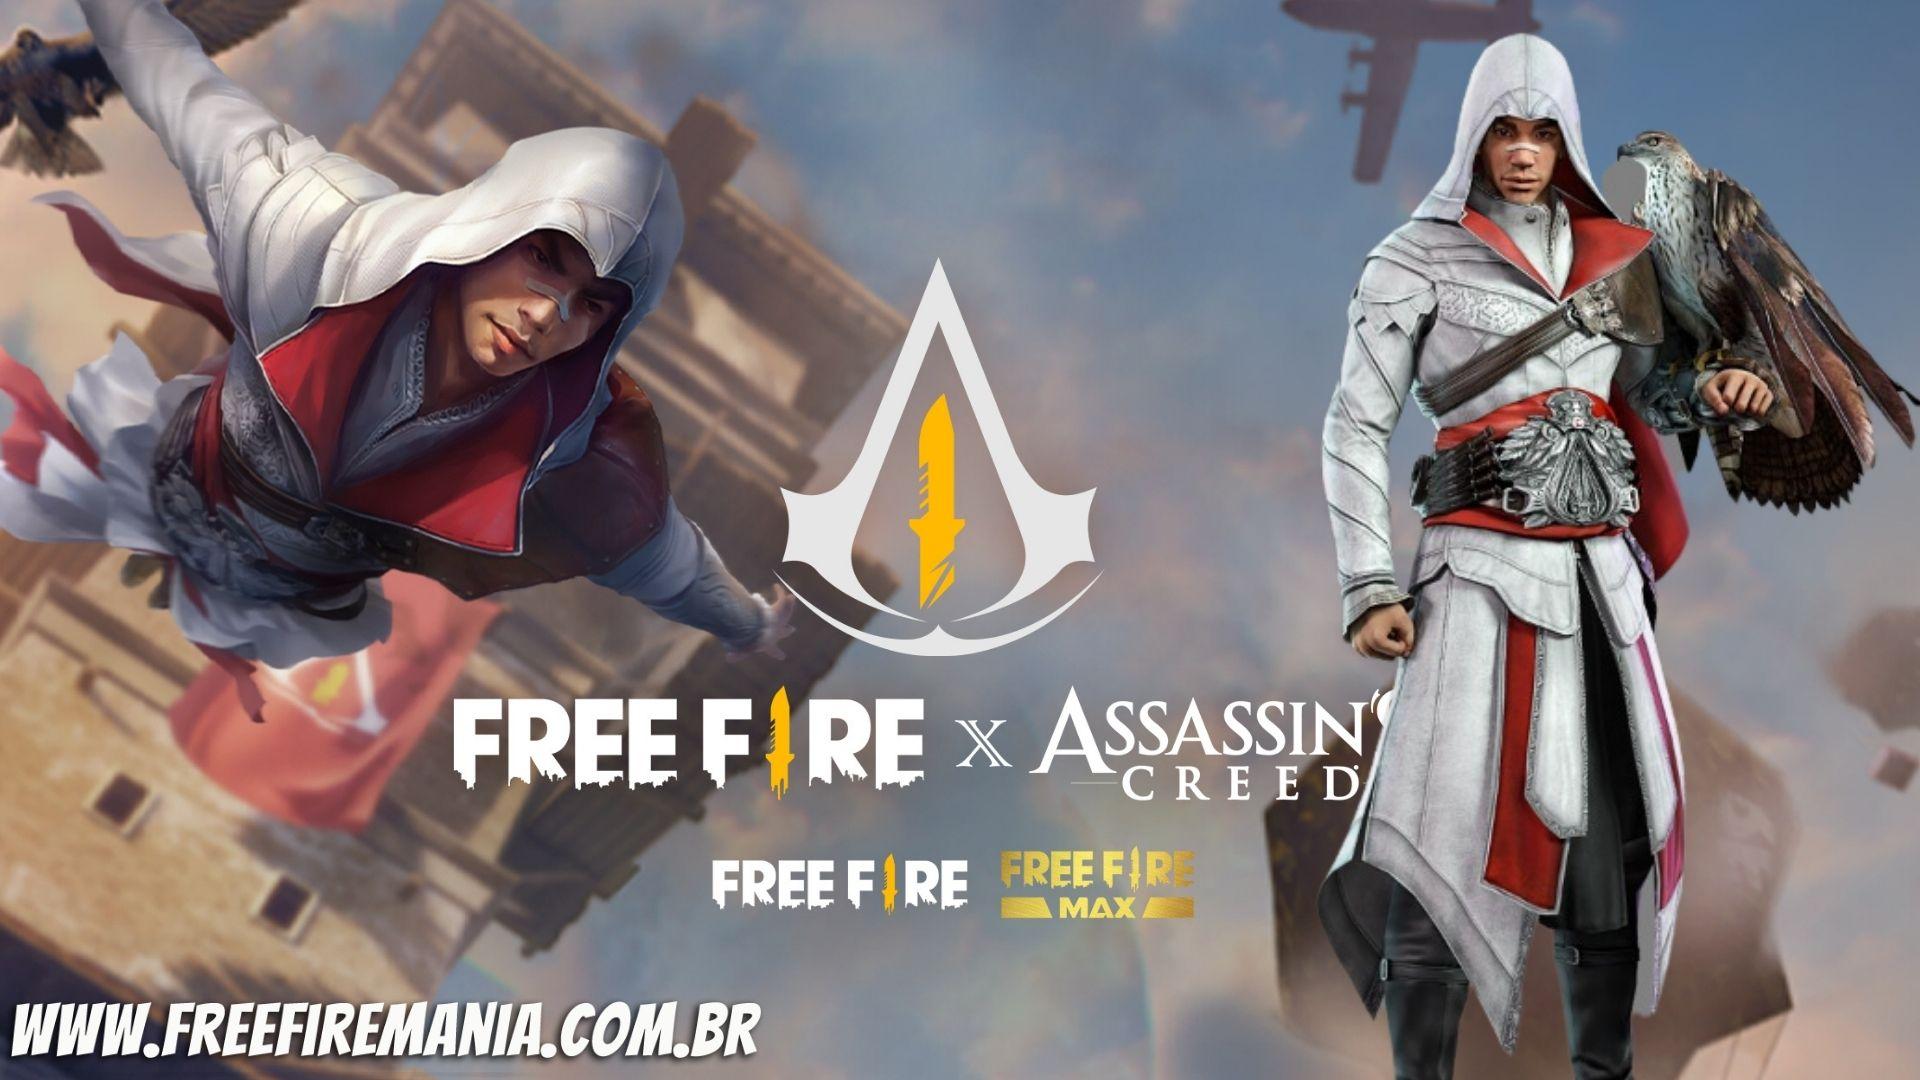 Loja Misteriosa Free Fire: próxima edição acontece em março 2022; Assassin's Creed